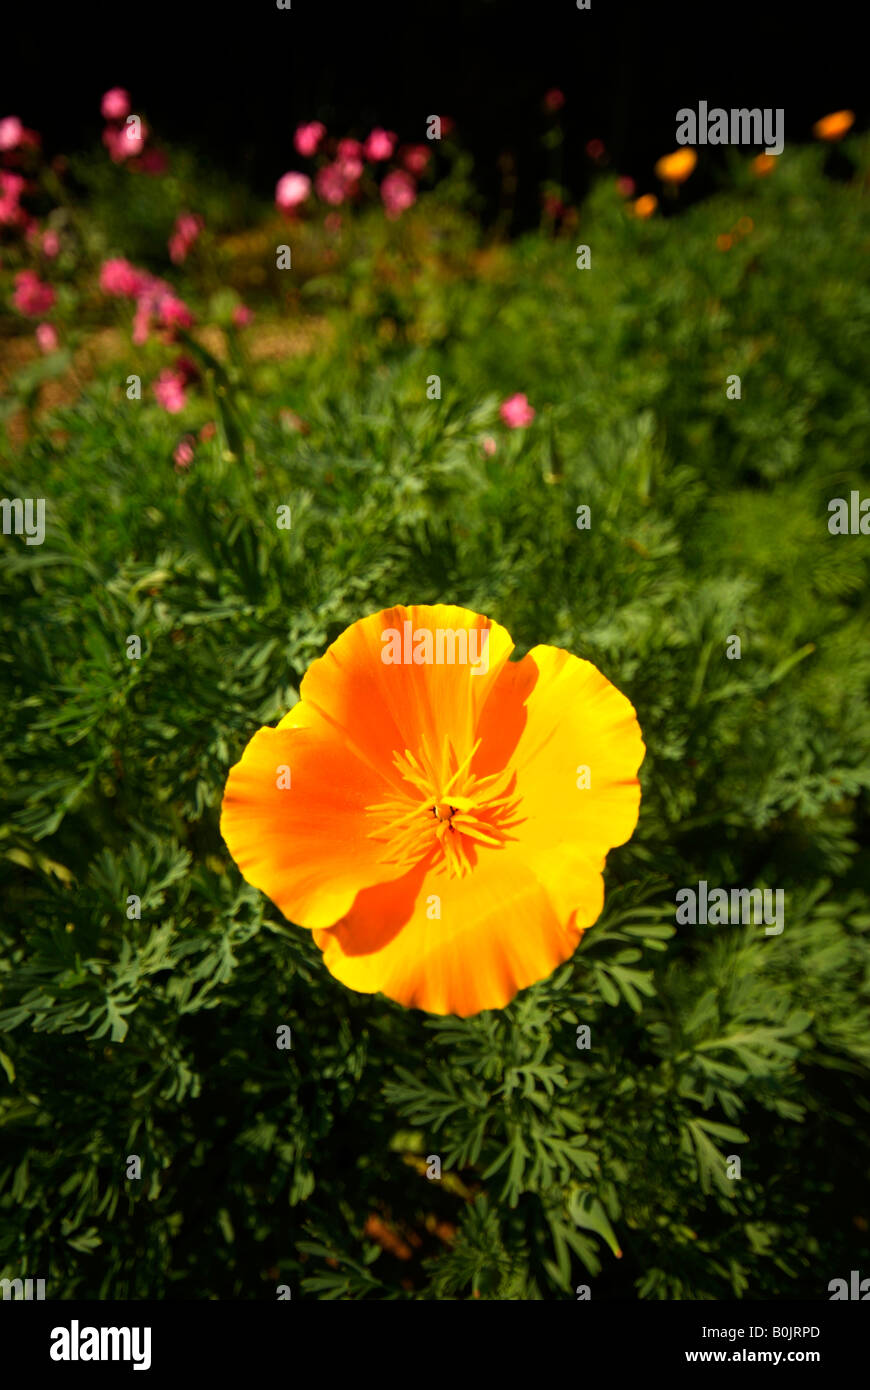 A single Californian Poppy (Eschscholzia californica) flowering in a garden. Stock Photo